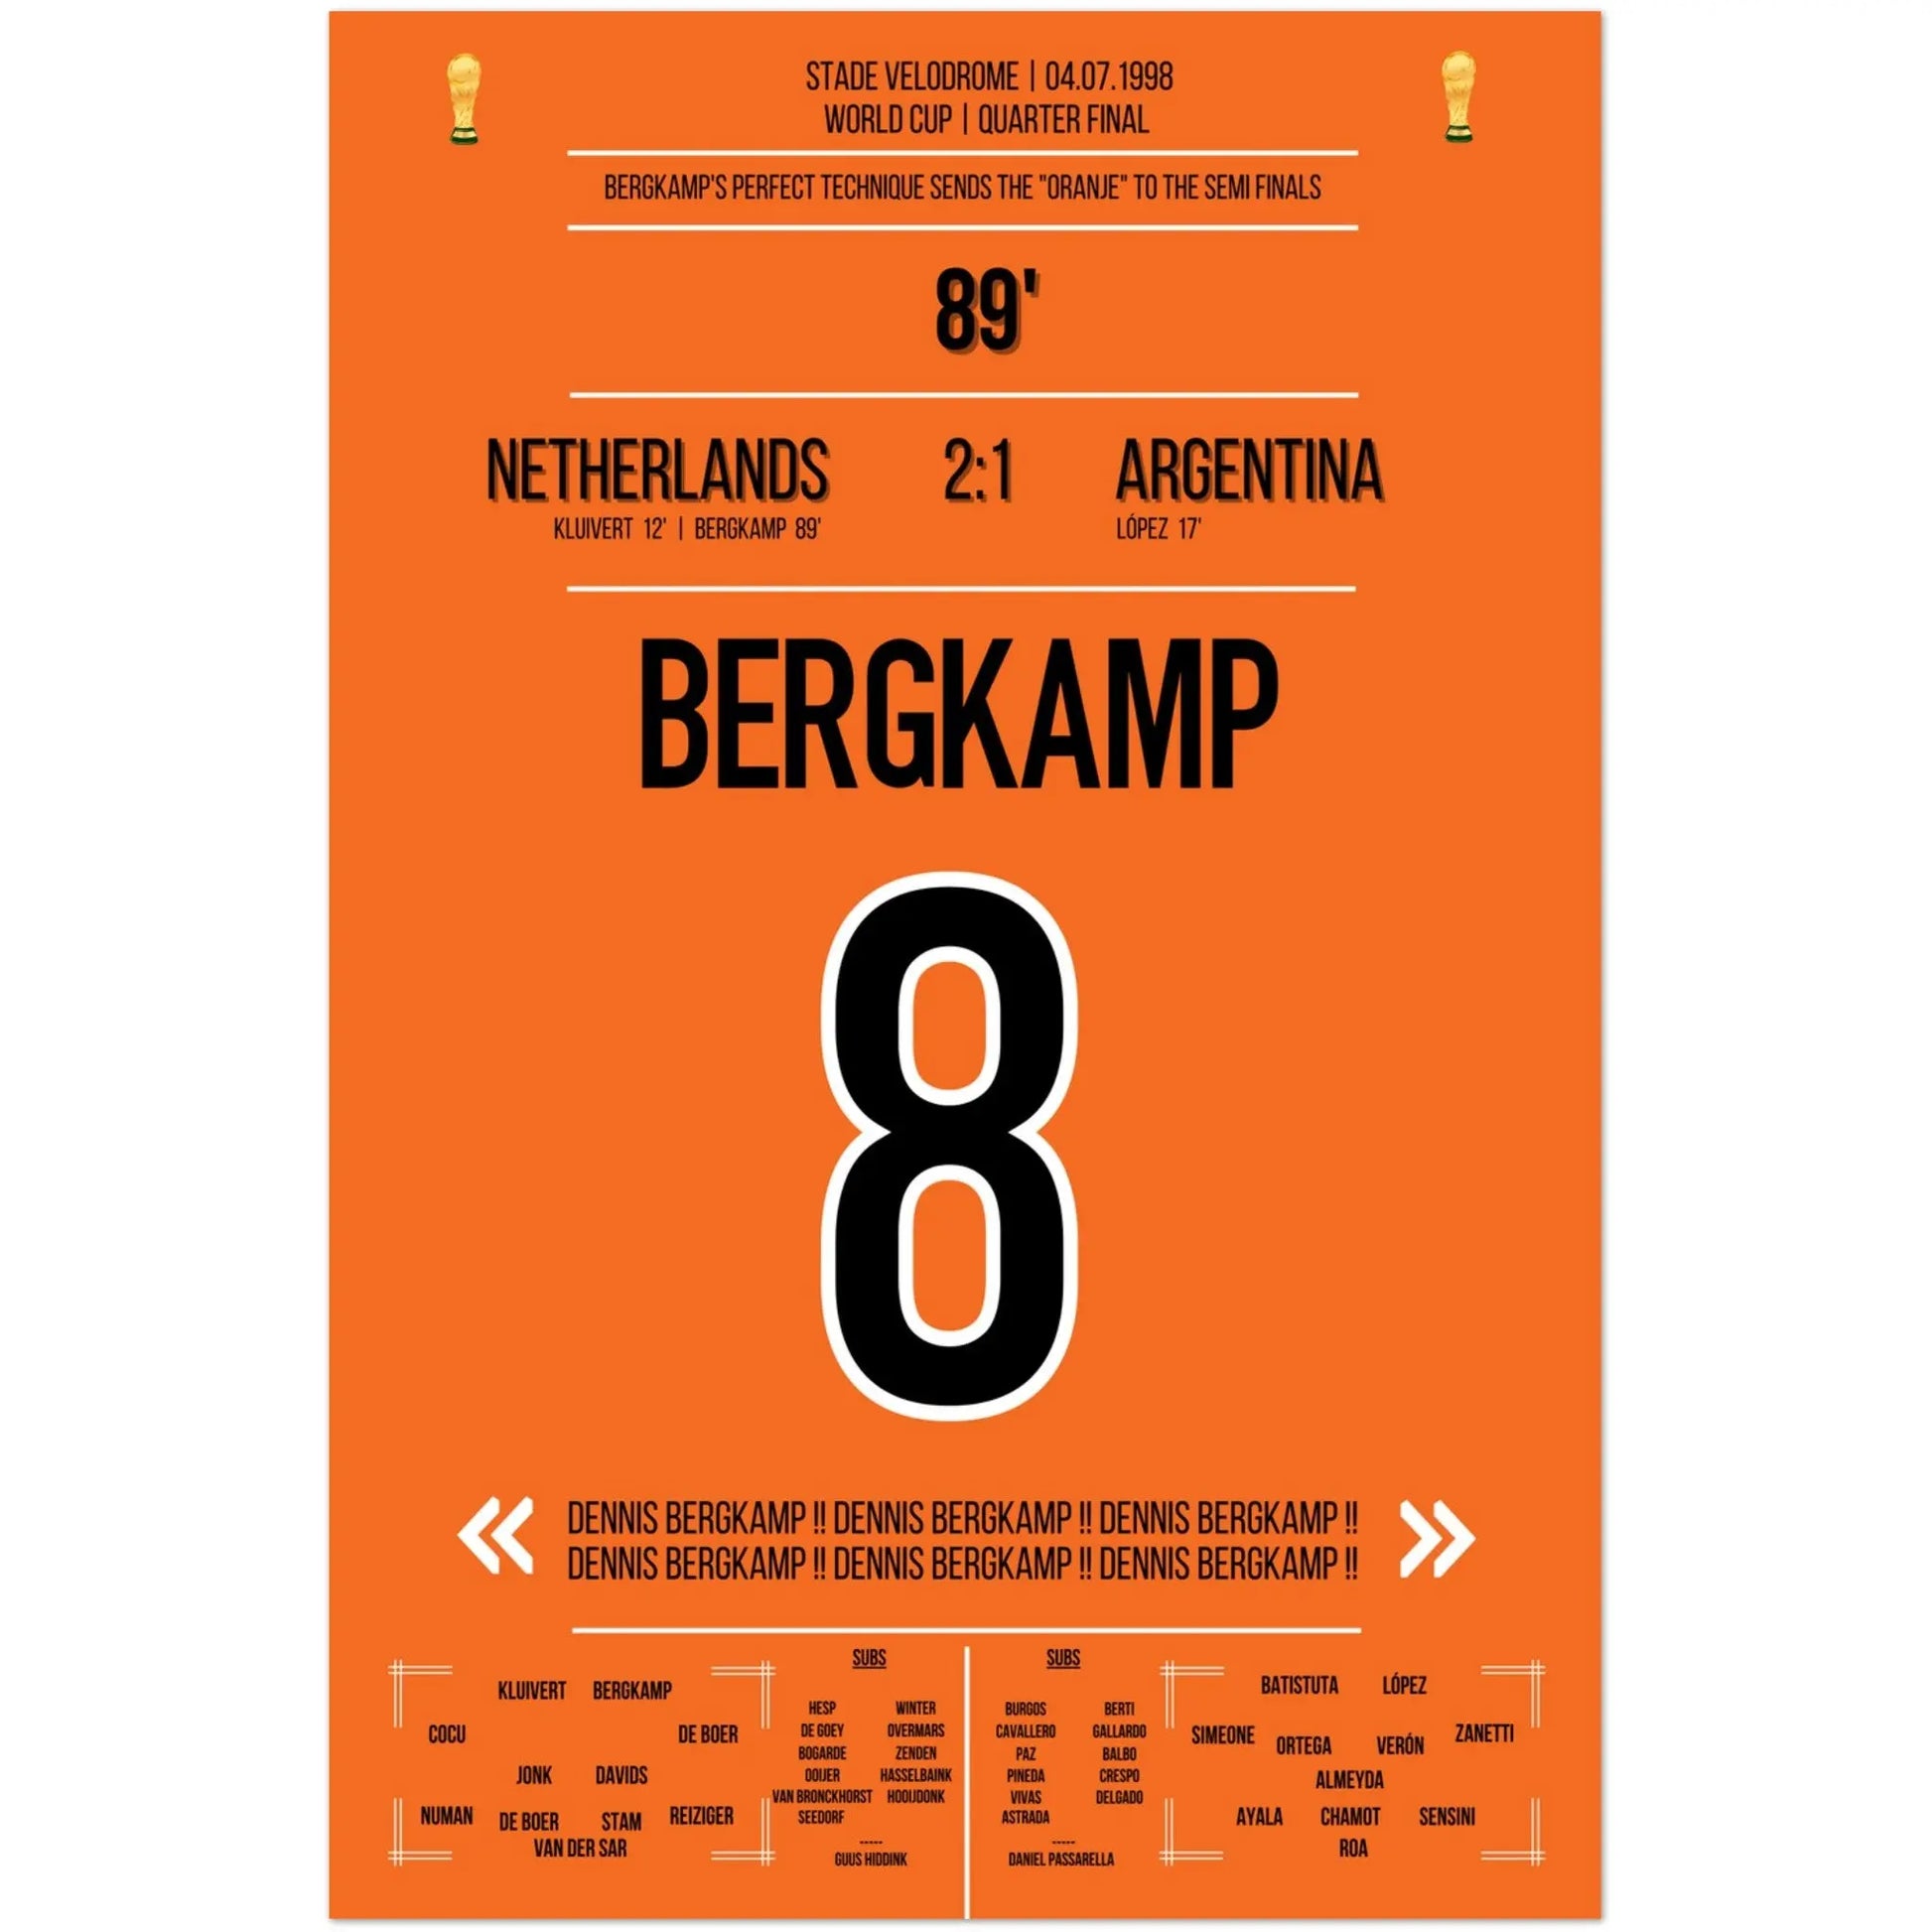 Dennis Bergkamp Traumtor bei der WM 1998 im Viertelfinale Niederlande - Argentinien 